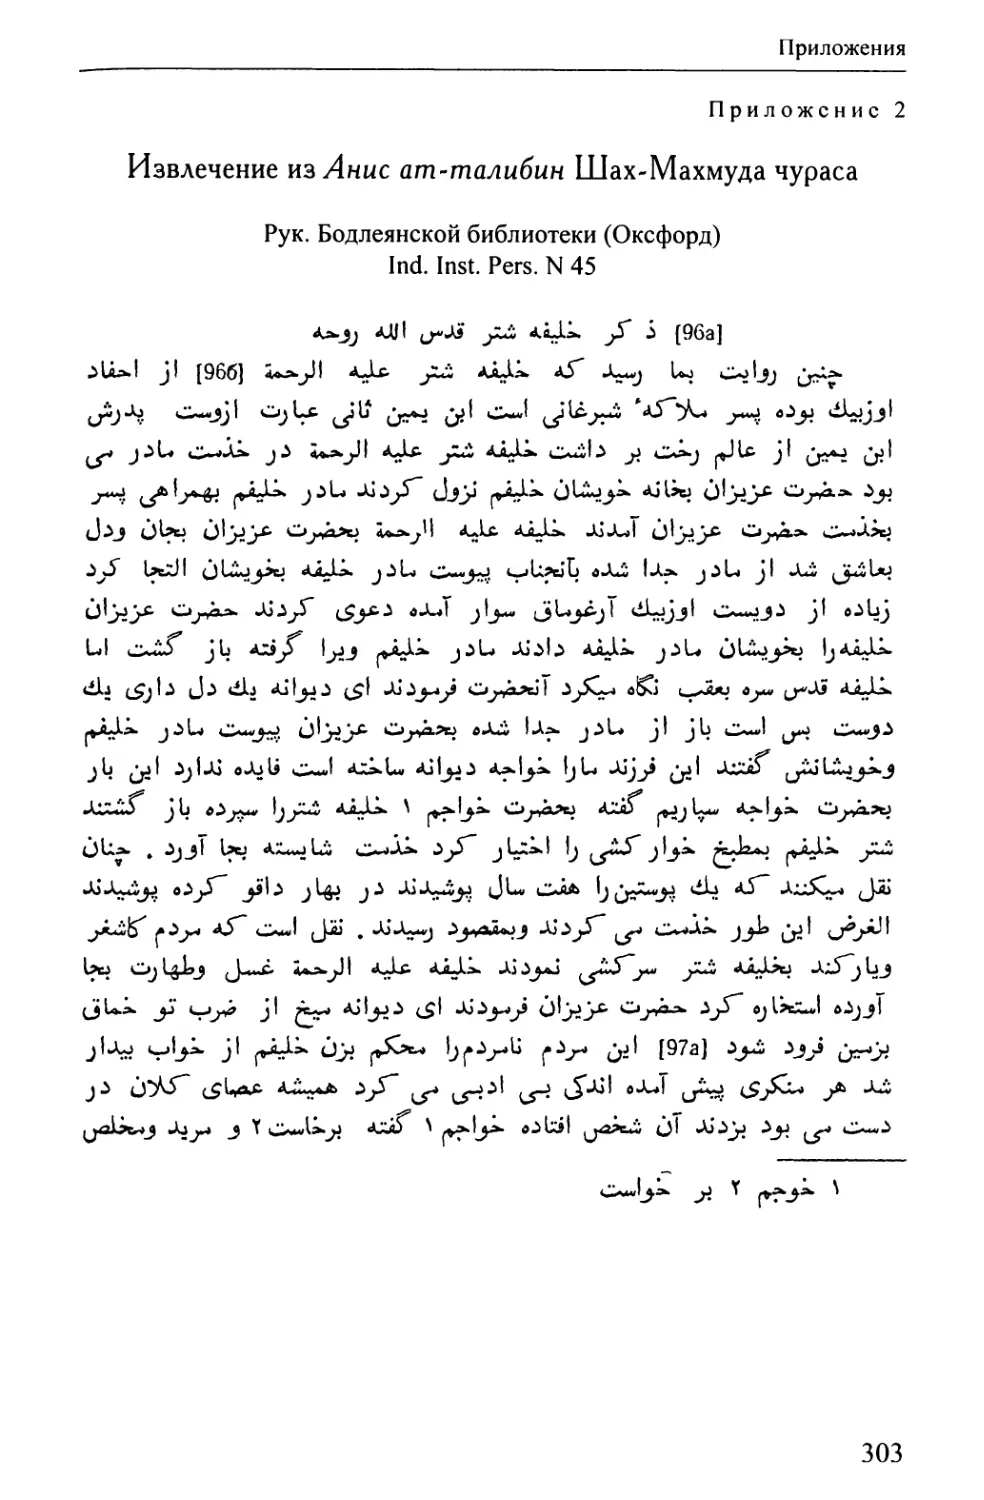 Приложение 2. Извлечение из Анис ат-талибин Шах-Махмуда Чураса